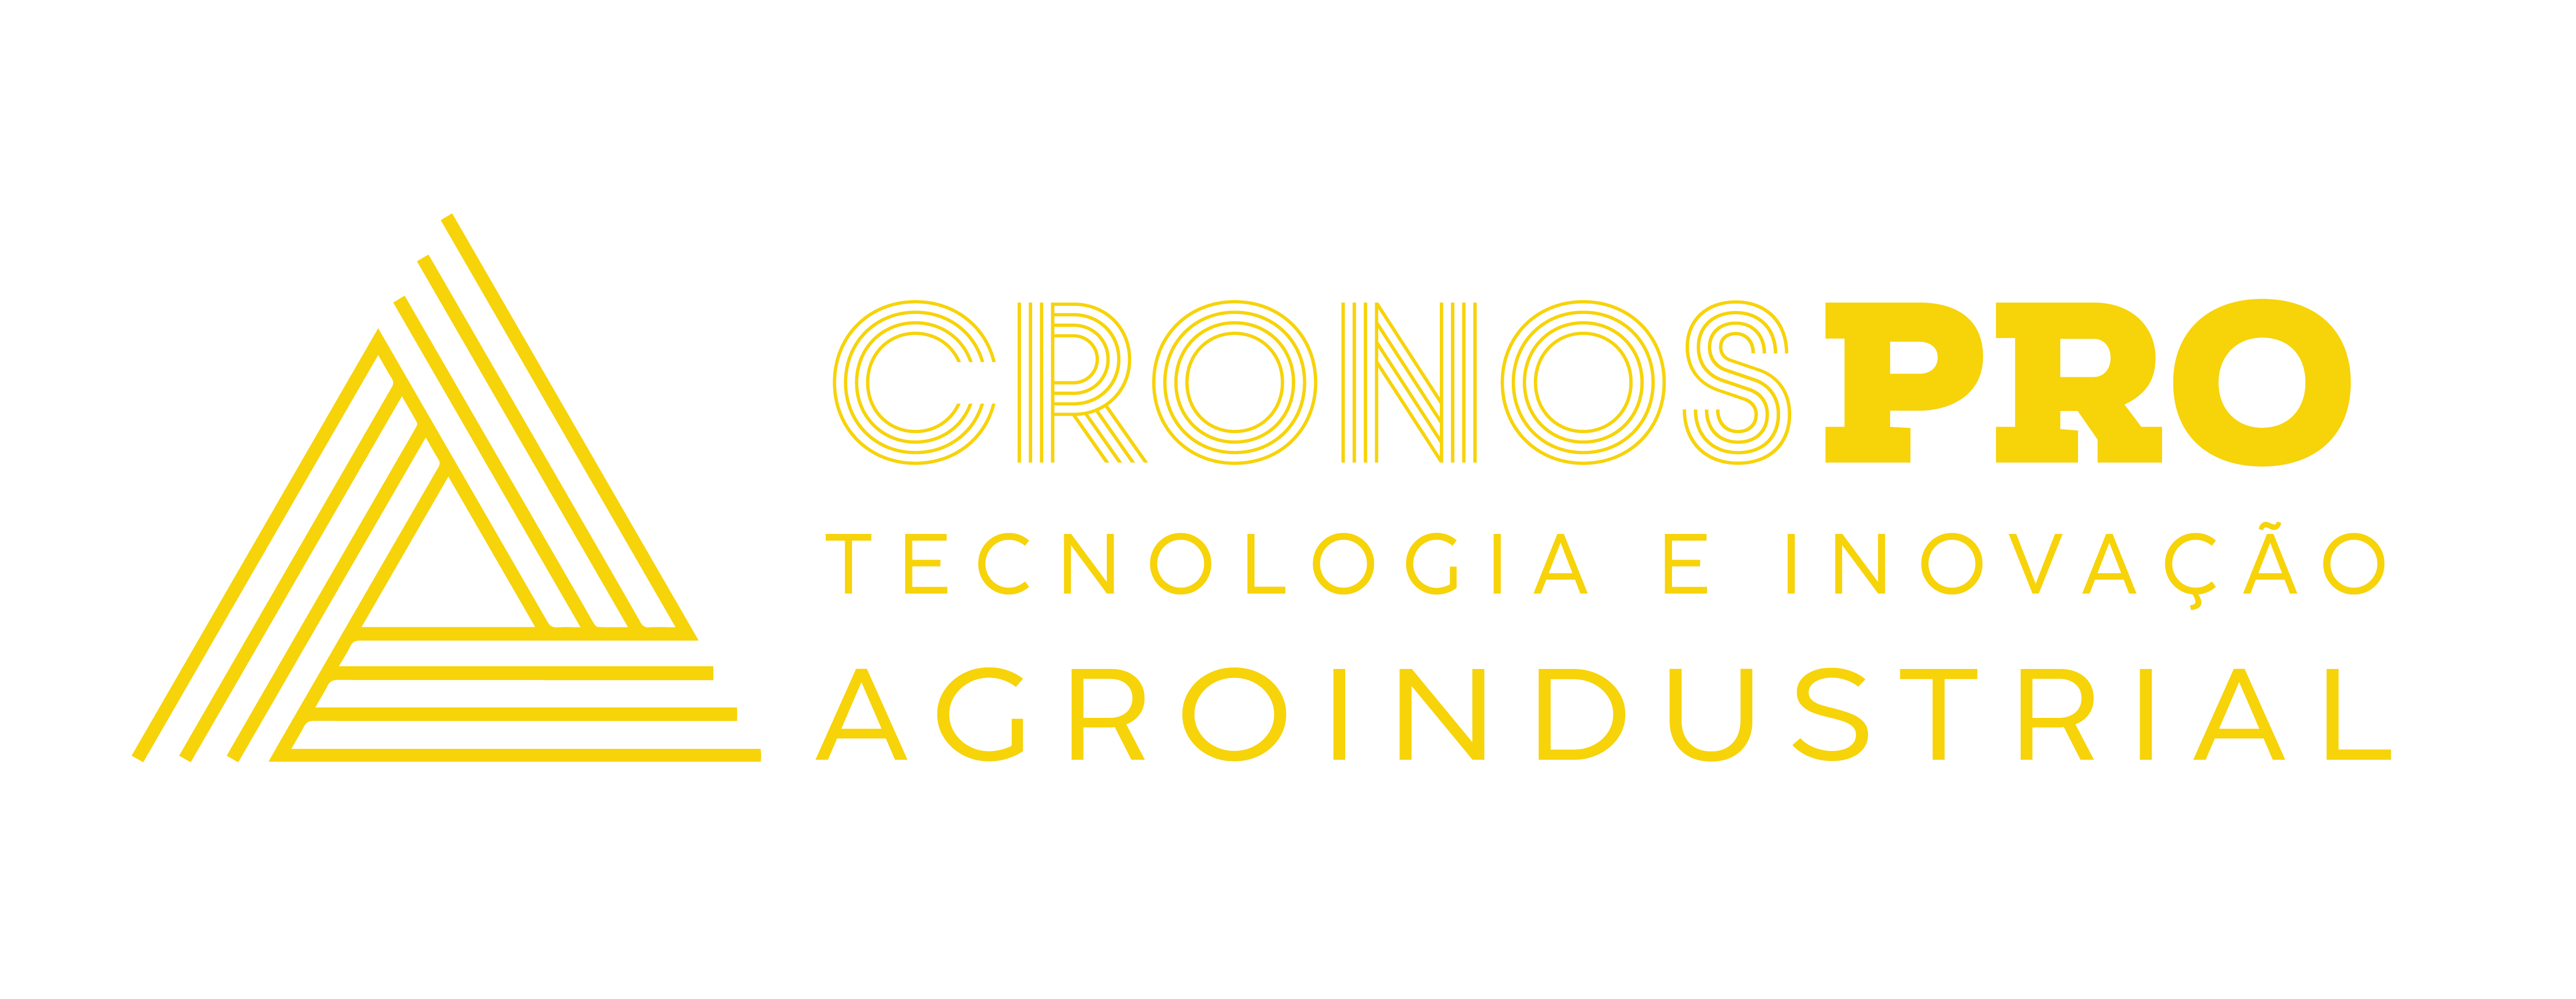 CronosPro - Inovação e Tecnologia